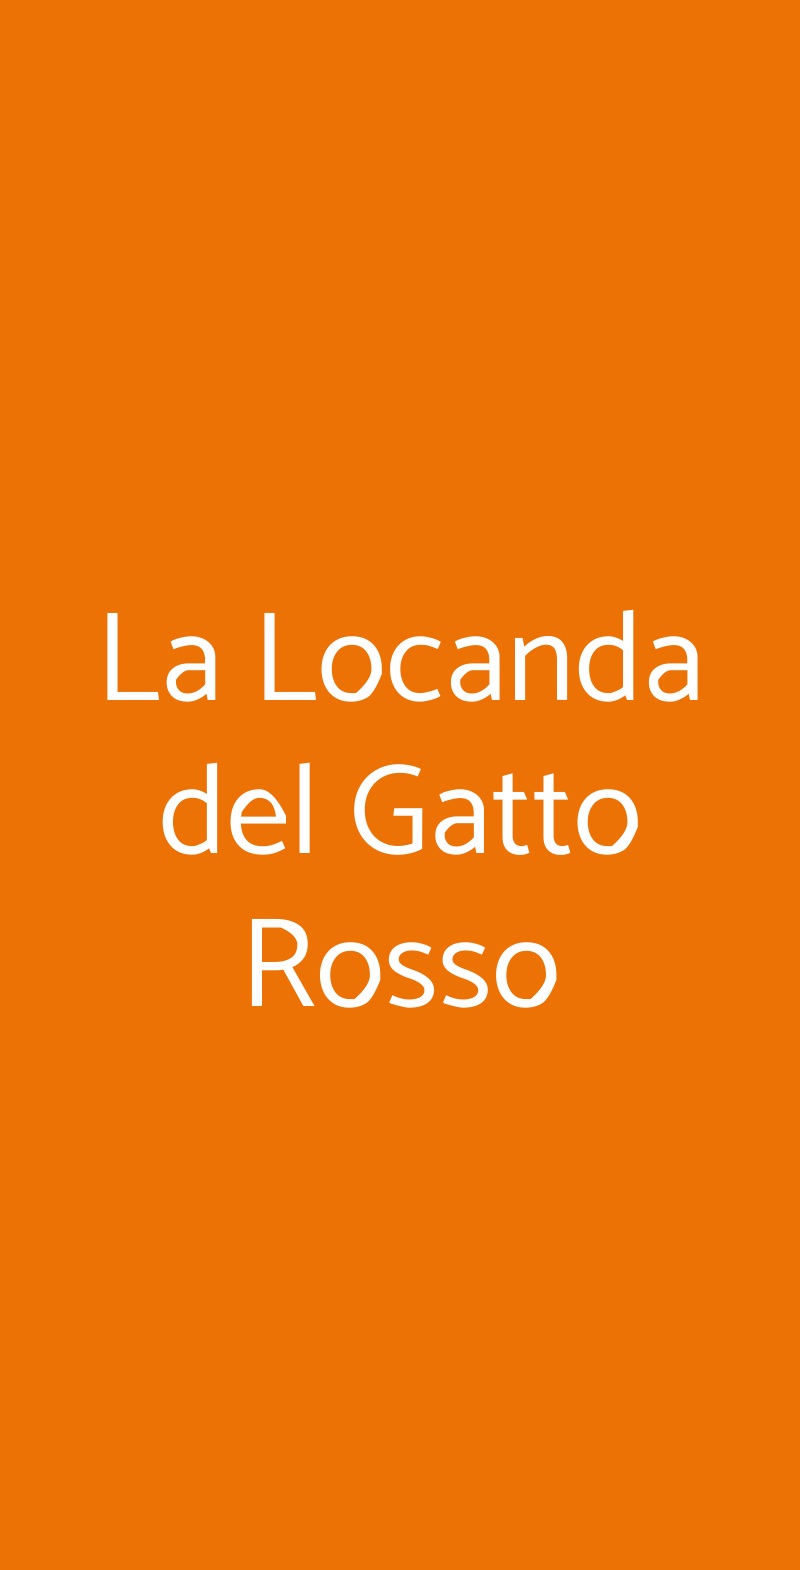 La Locanda del Gatto Rosso Milano menù 1 pagina